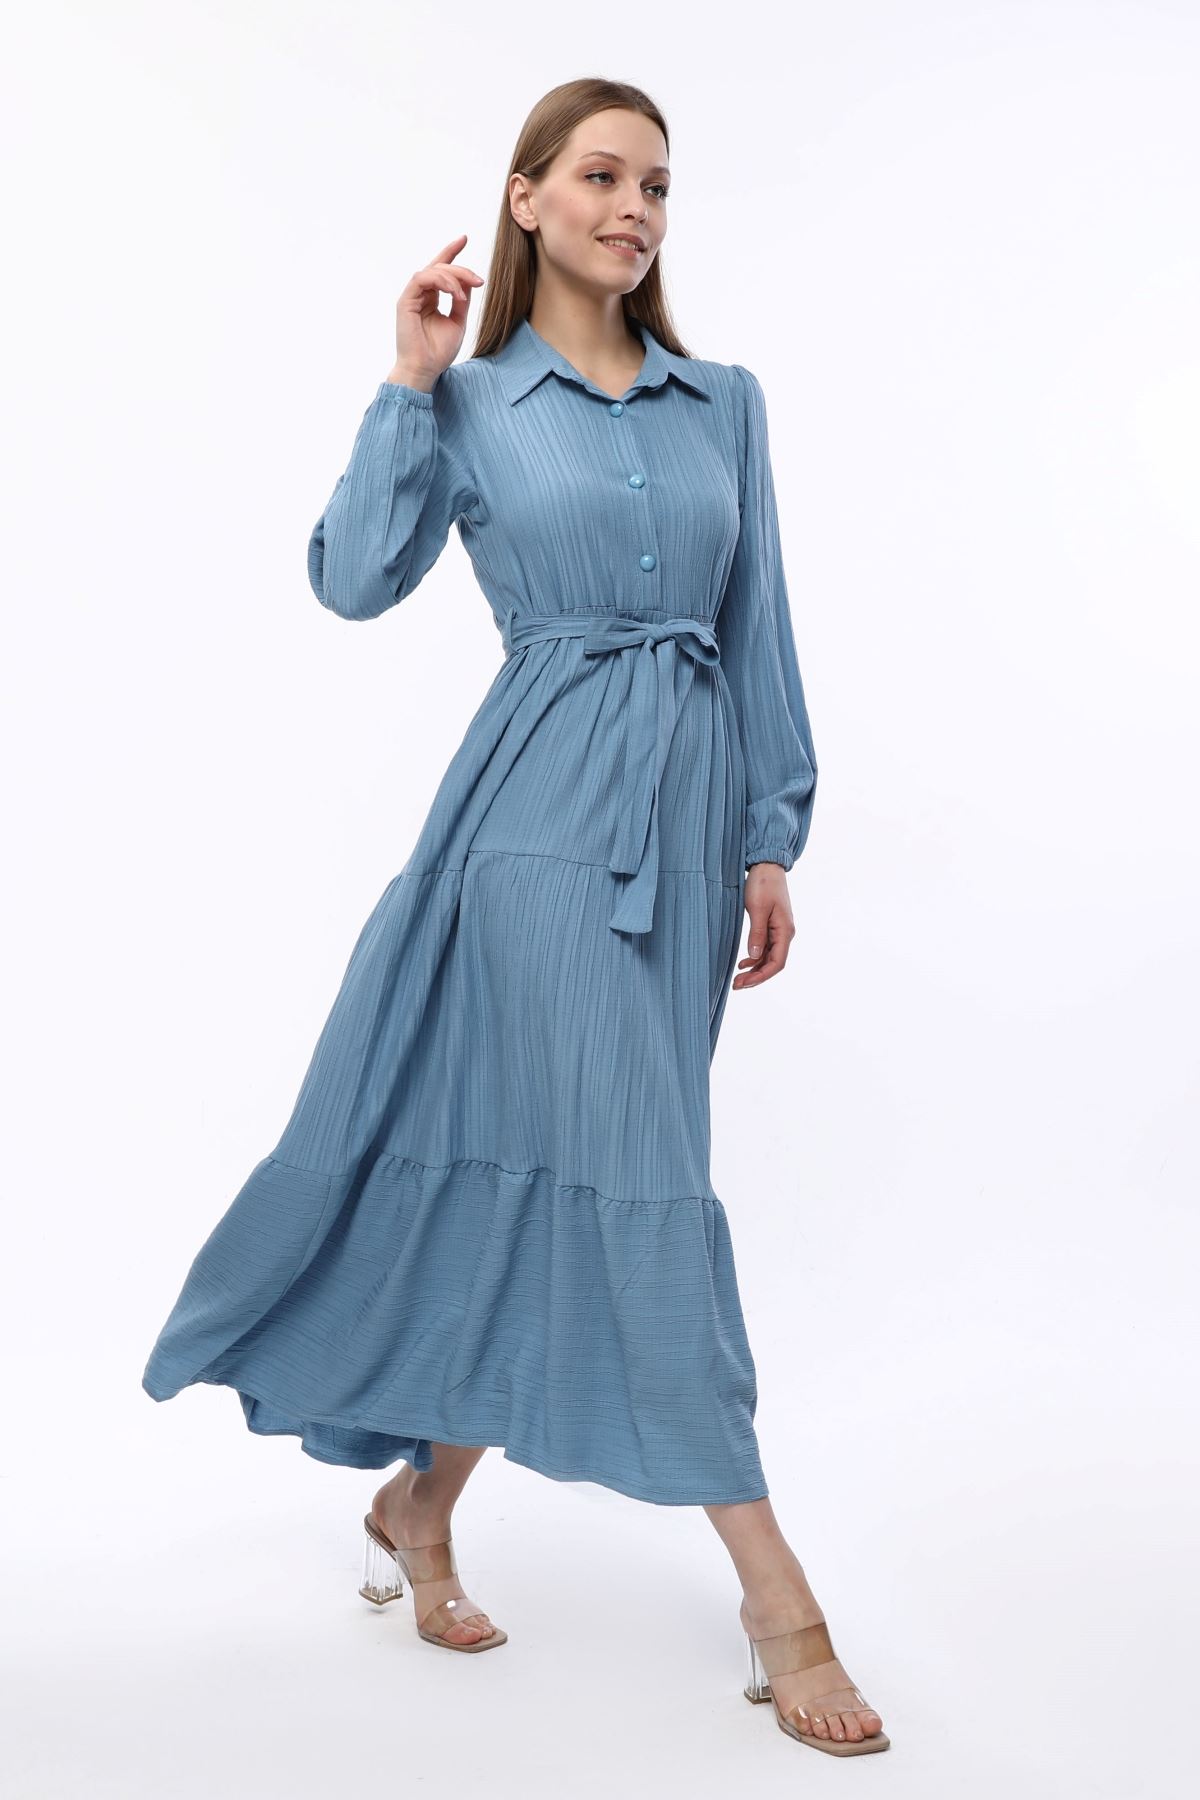 Belted Waterway Blue Women's Dress